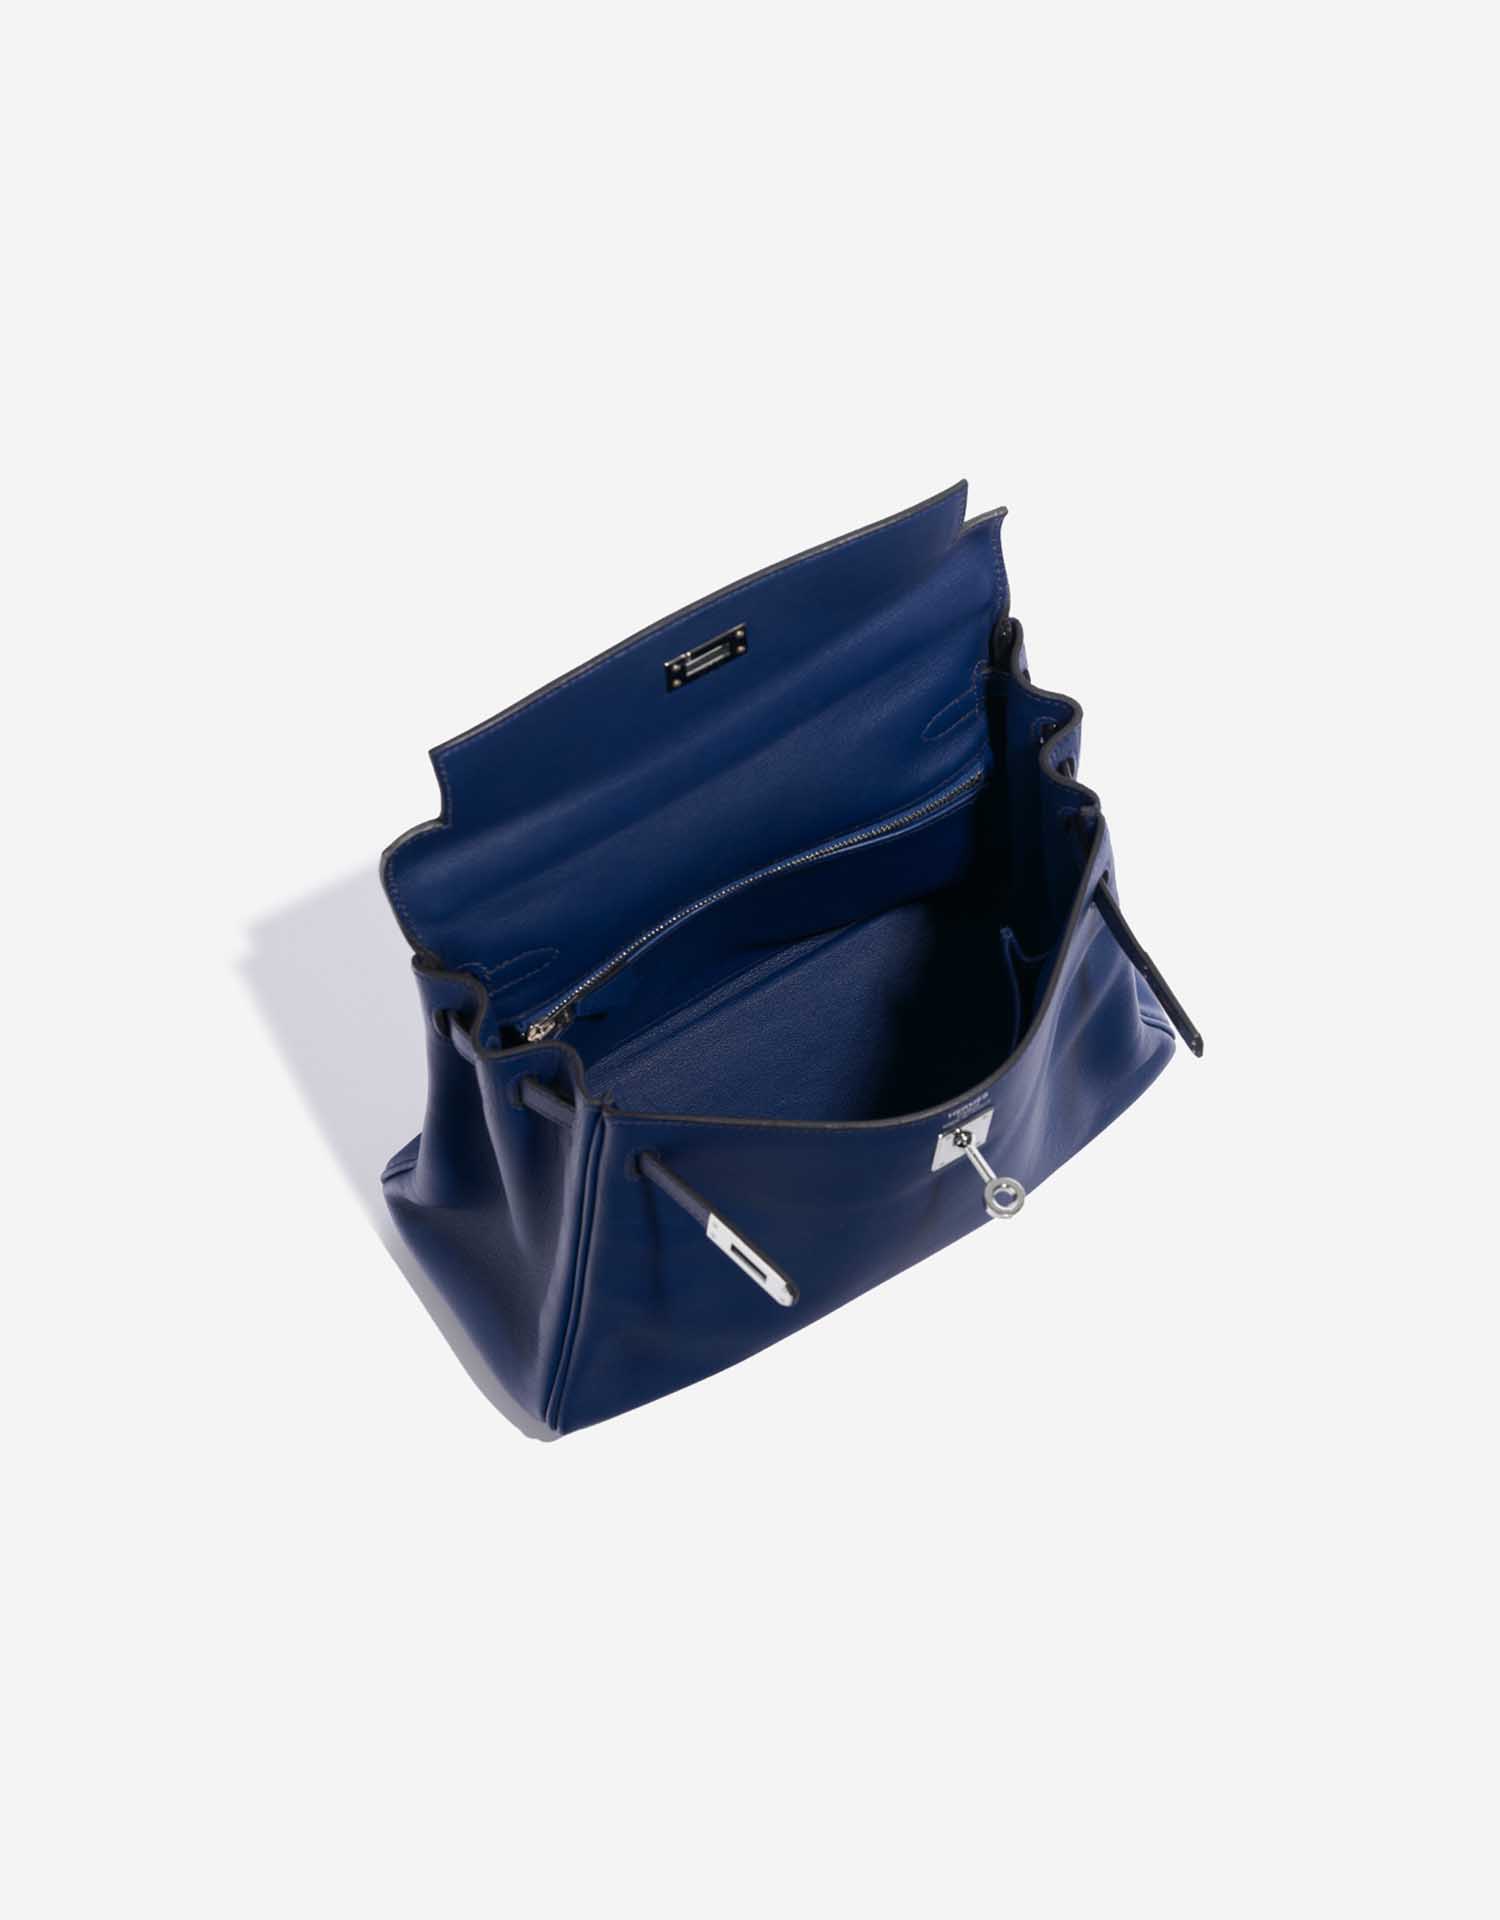 Sac Hermès d'occasion Kelly 25 Swift Bleu Saphir Bleu Intérieur | Vendez votre sac de créateur sur Saclab.com